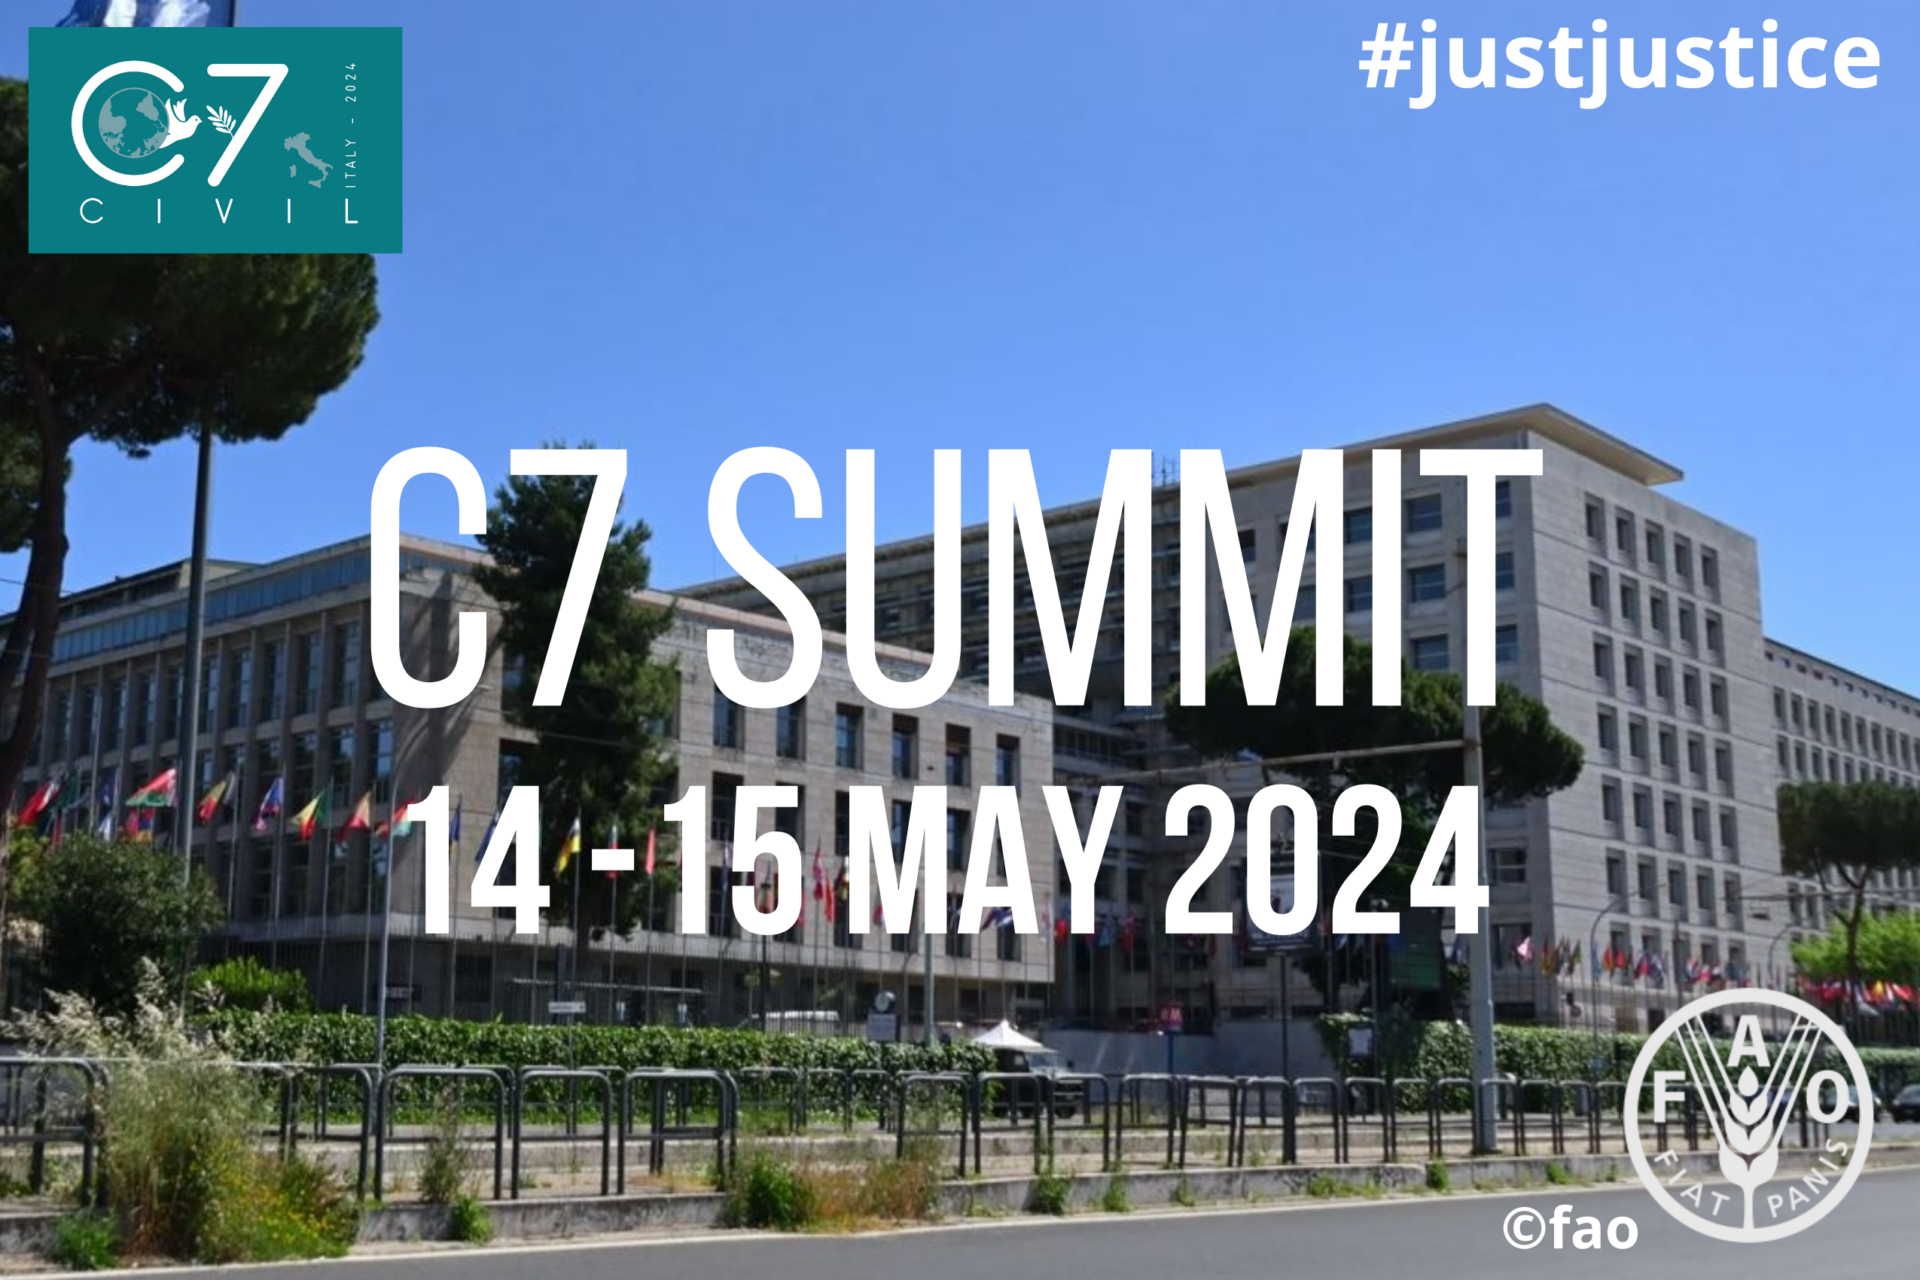 C7vsG7: a Roma il contro summit in nome della pace, disarmo, giustizia sociale